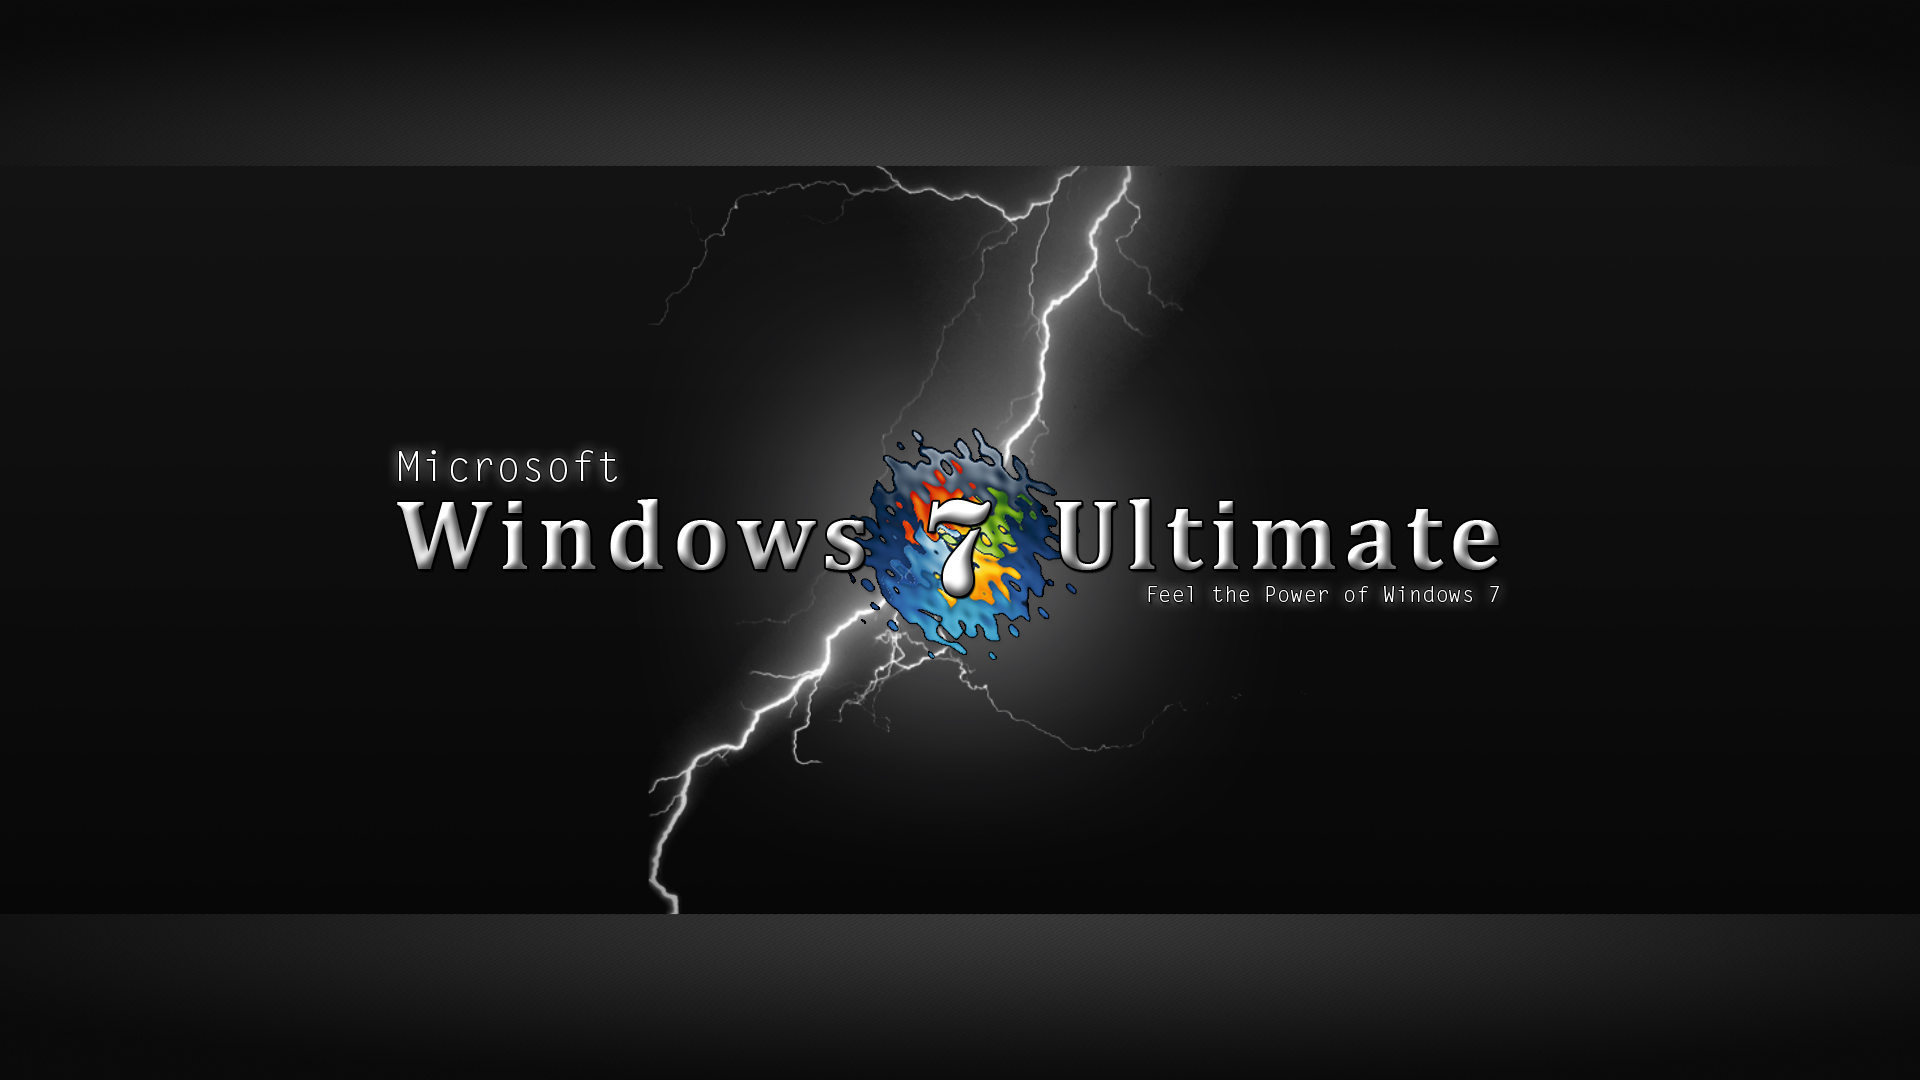 48+] Windows 7 Ultimate Wallpaper Hd - WallpaperSafari